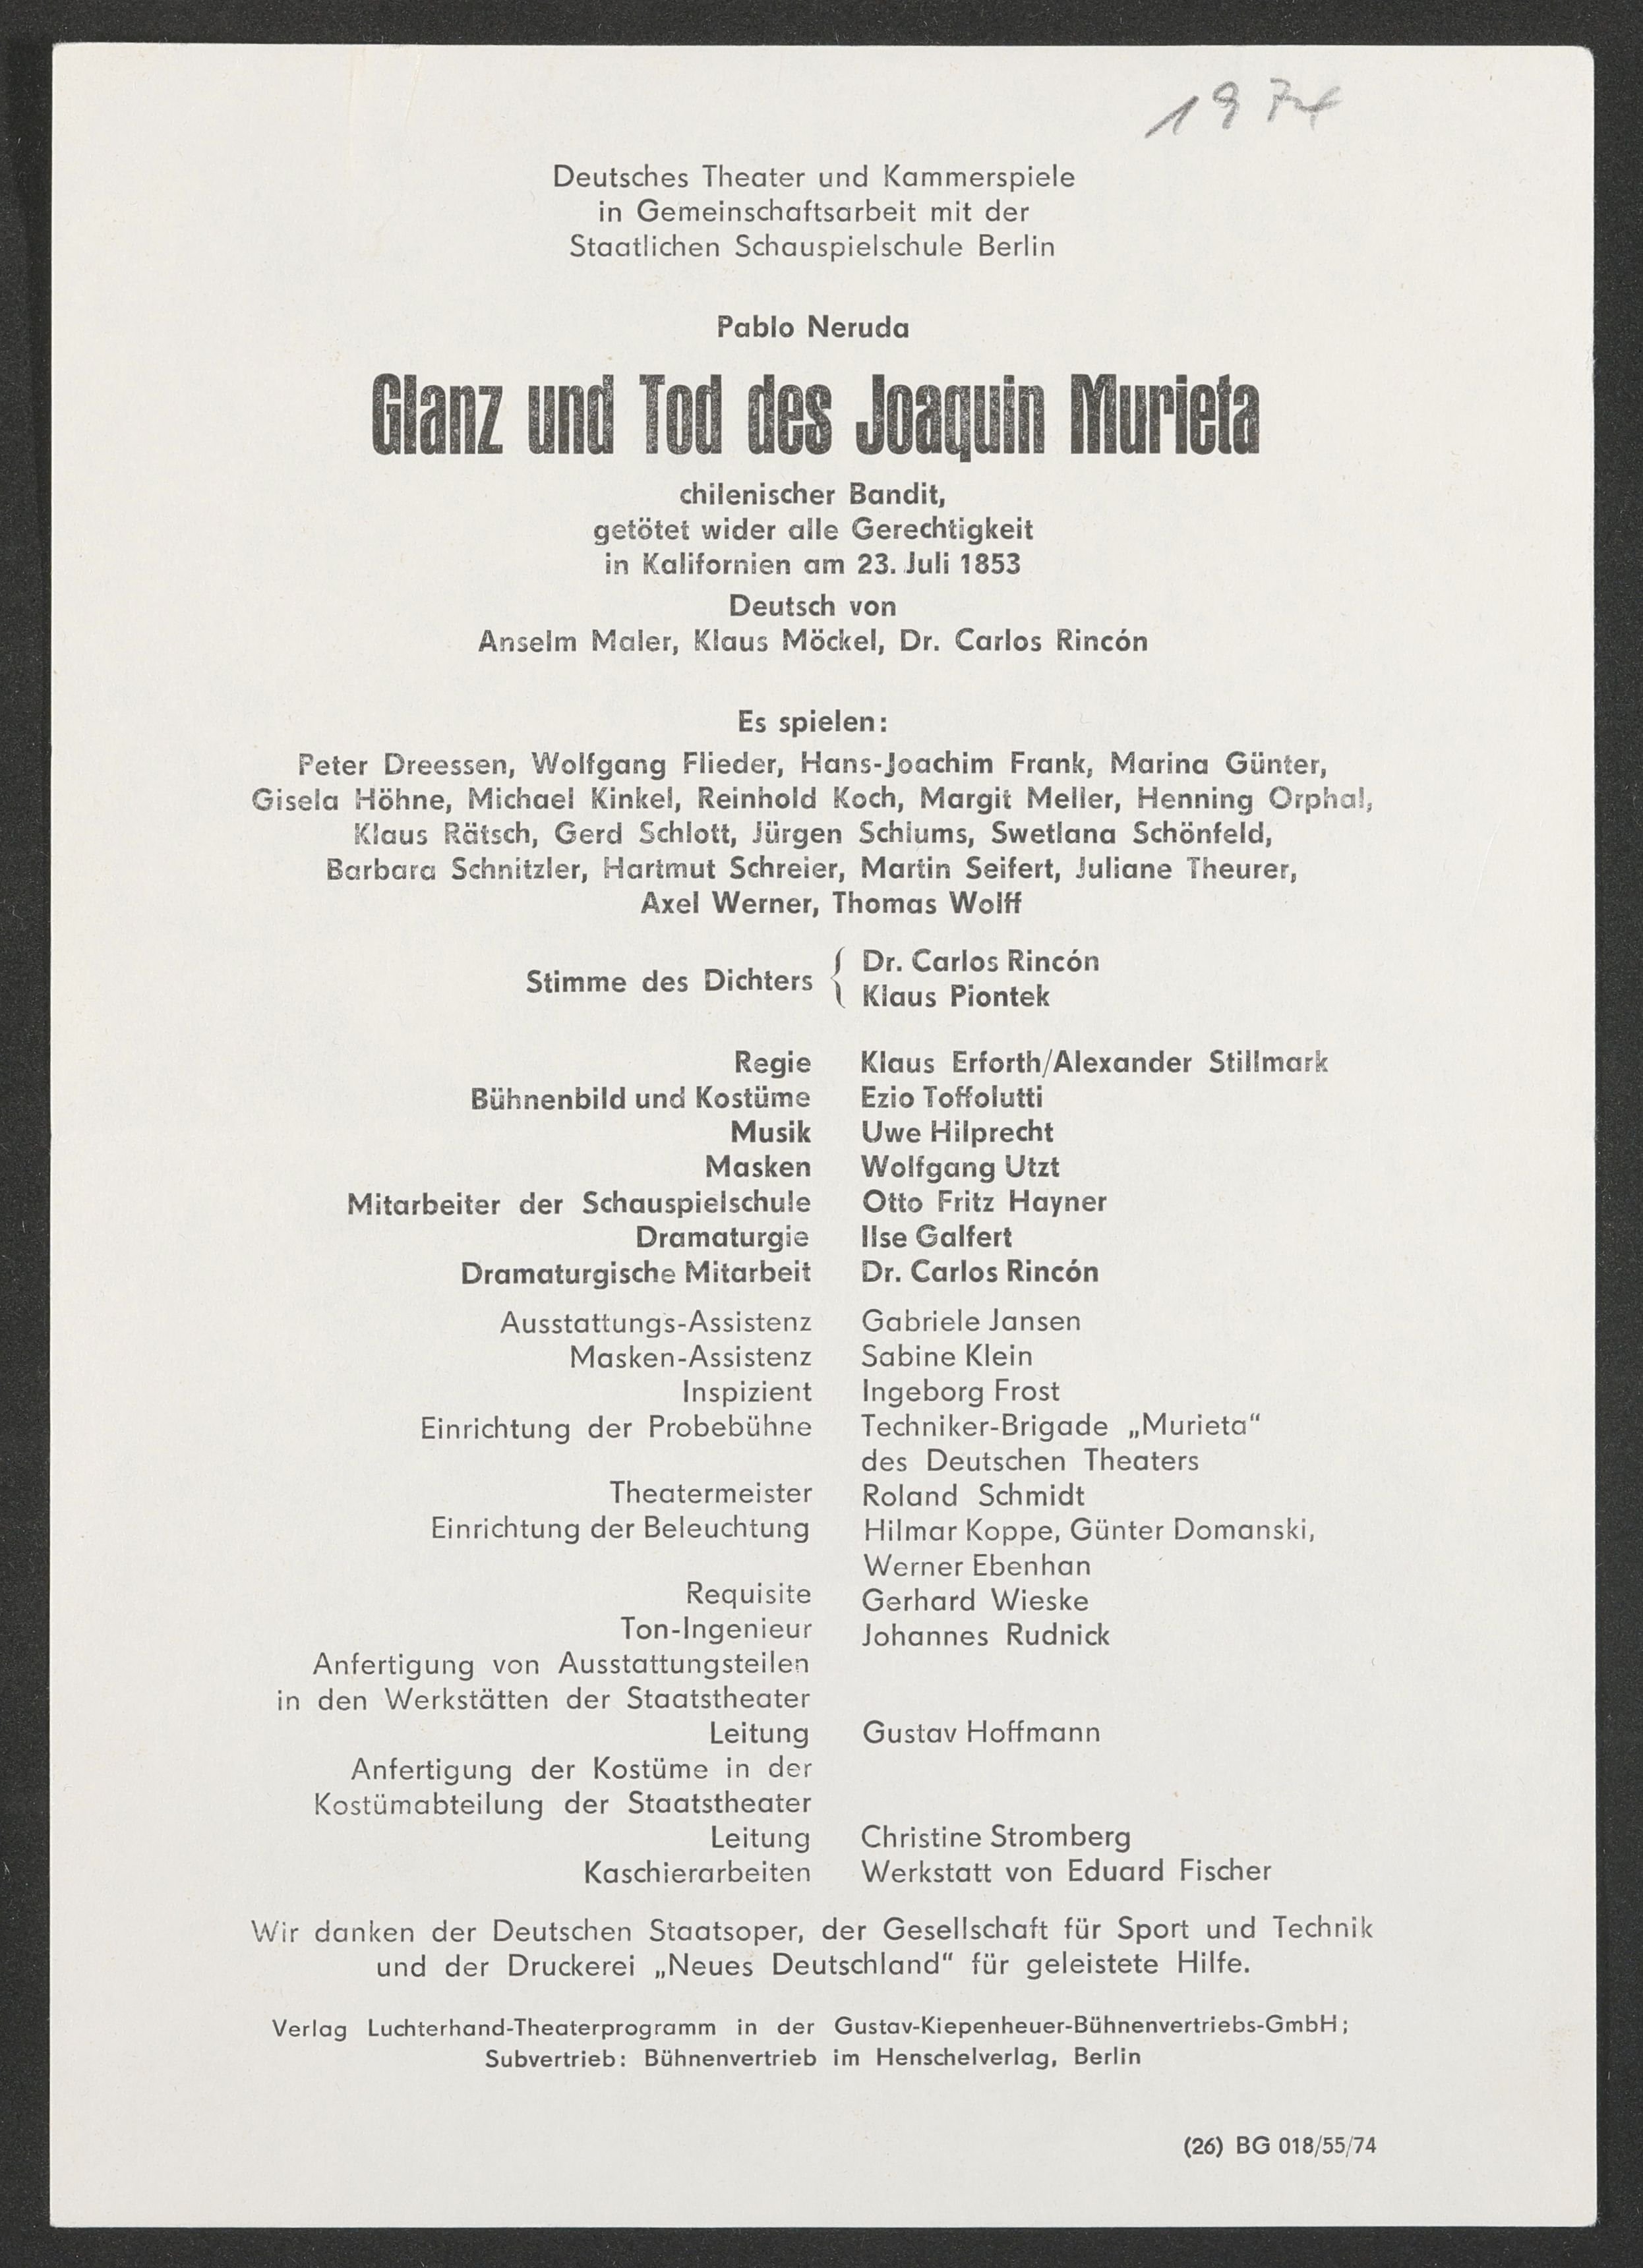 Programmzettel zu "Glanz und Tod des Joaquin Murieta" an der Probebühne des Deutschen Theaters 1974 (Hochschule für Schauspielkunst Ernst Busch Berlin RR-F)